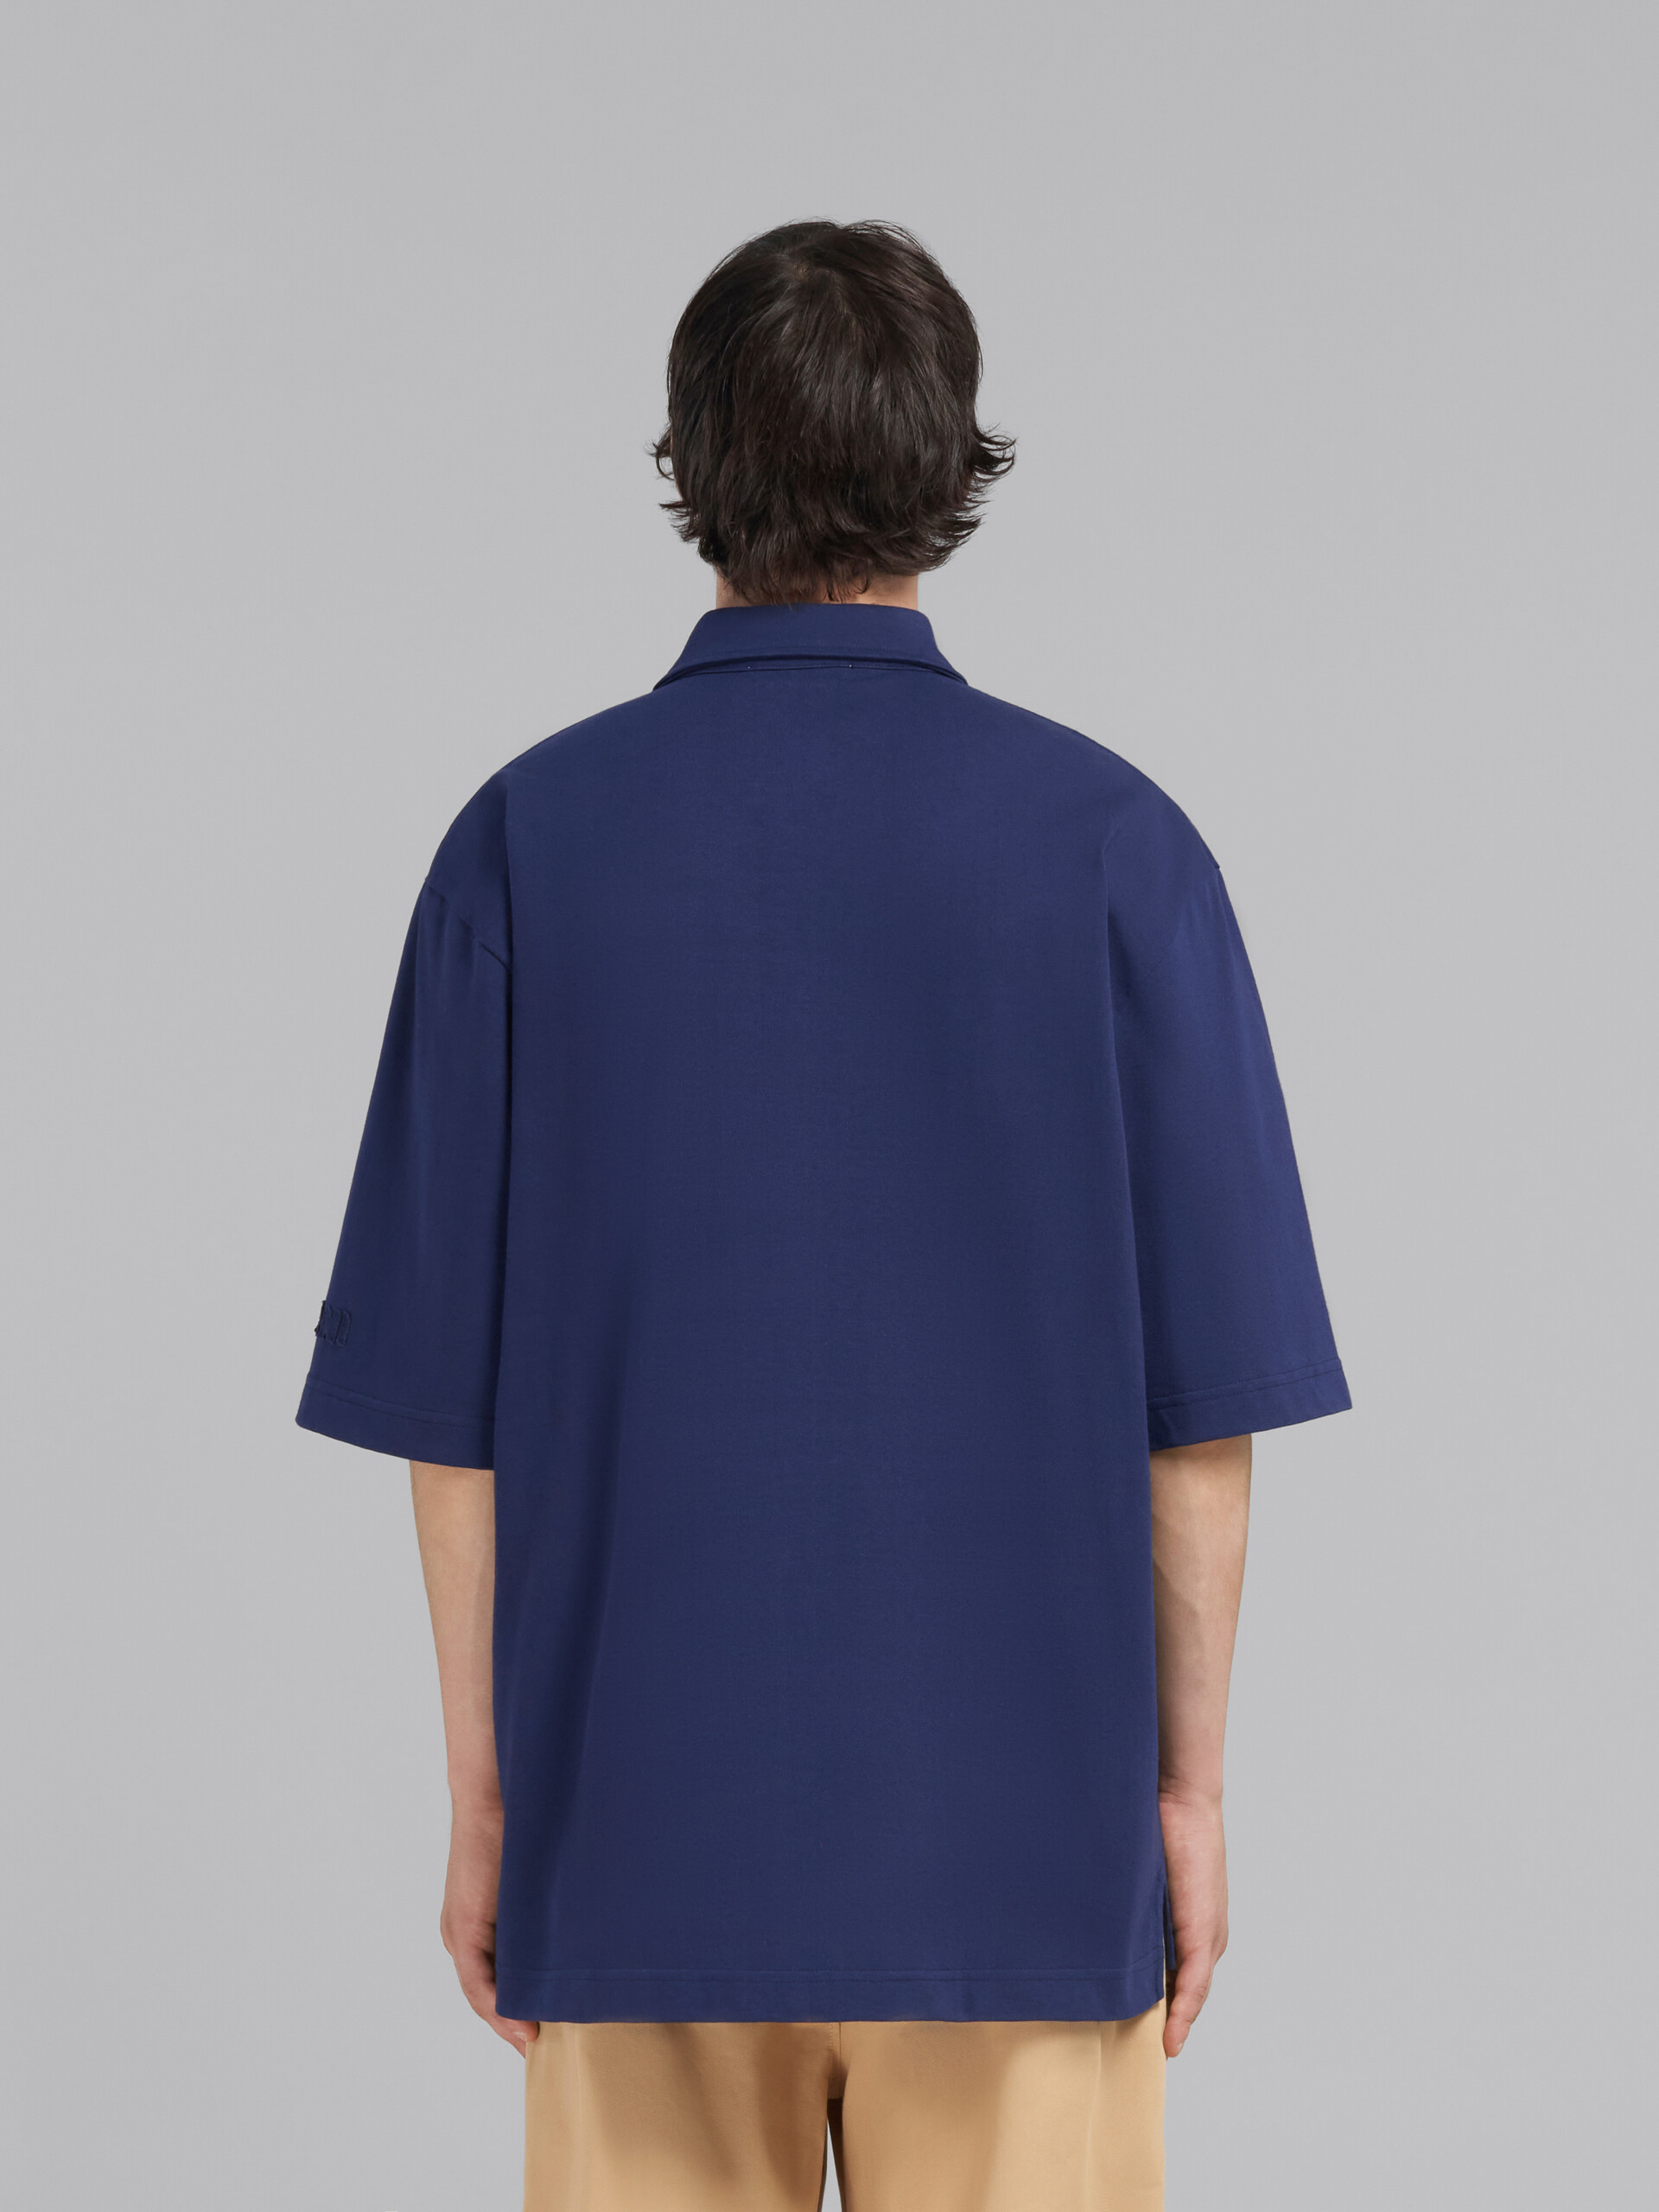 Polo oversize azul de algodón ecológico con parches Marni - Camisas - Image 3